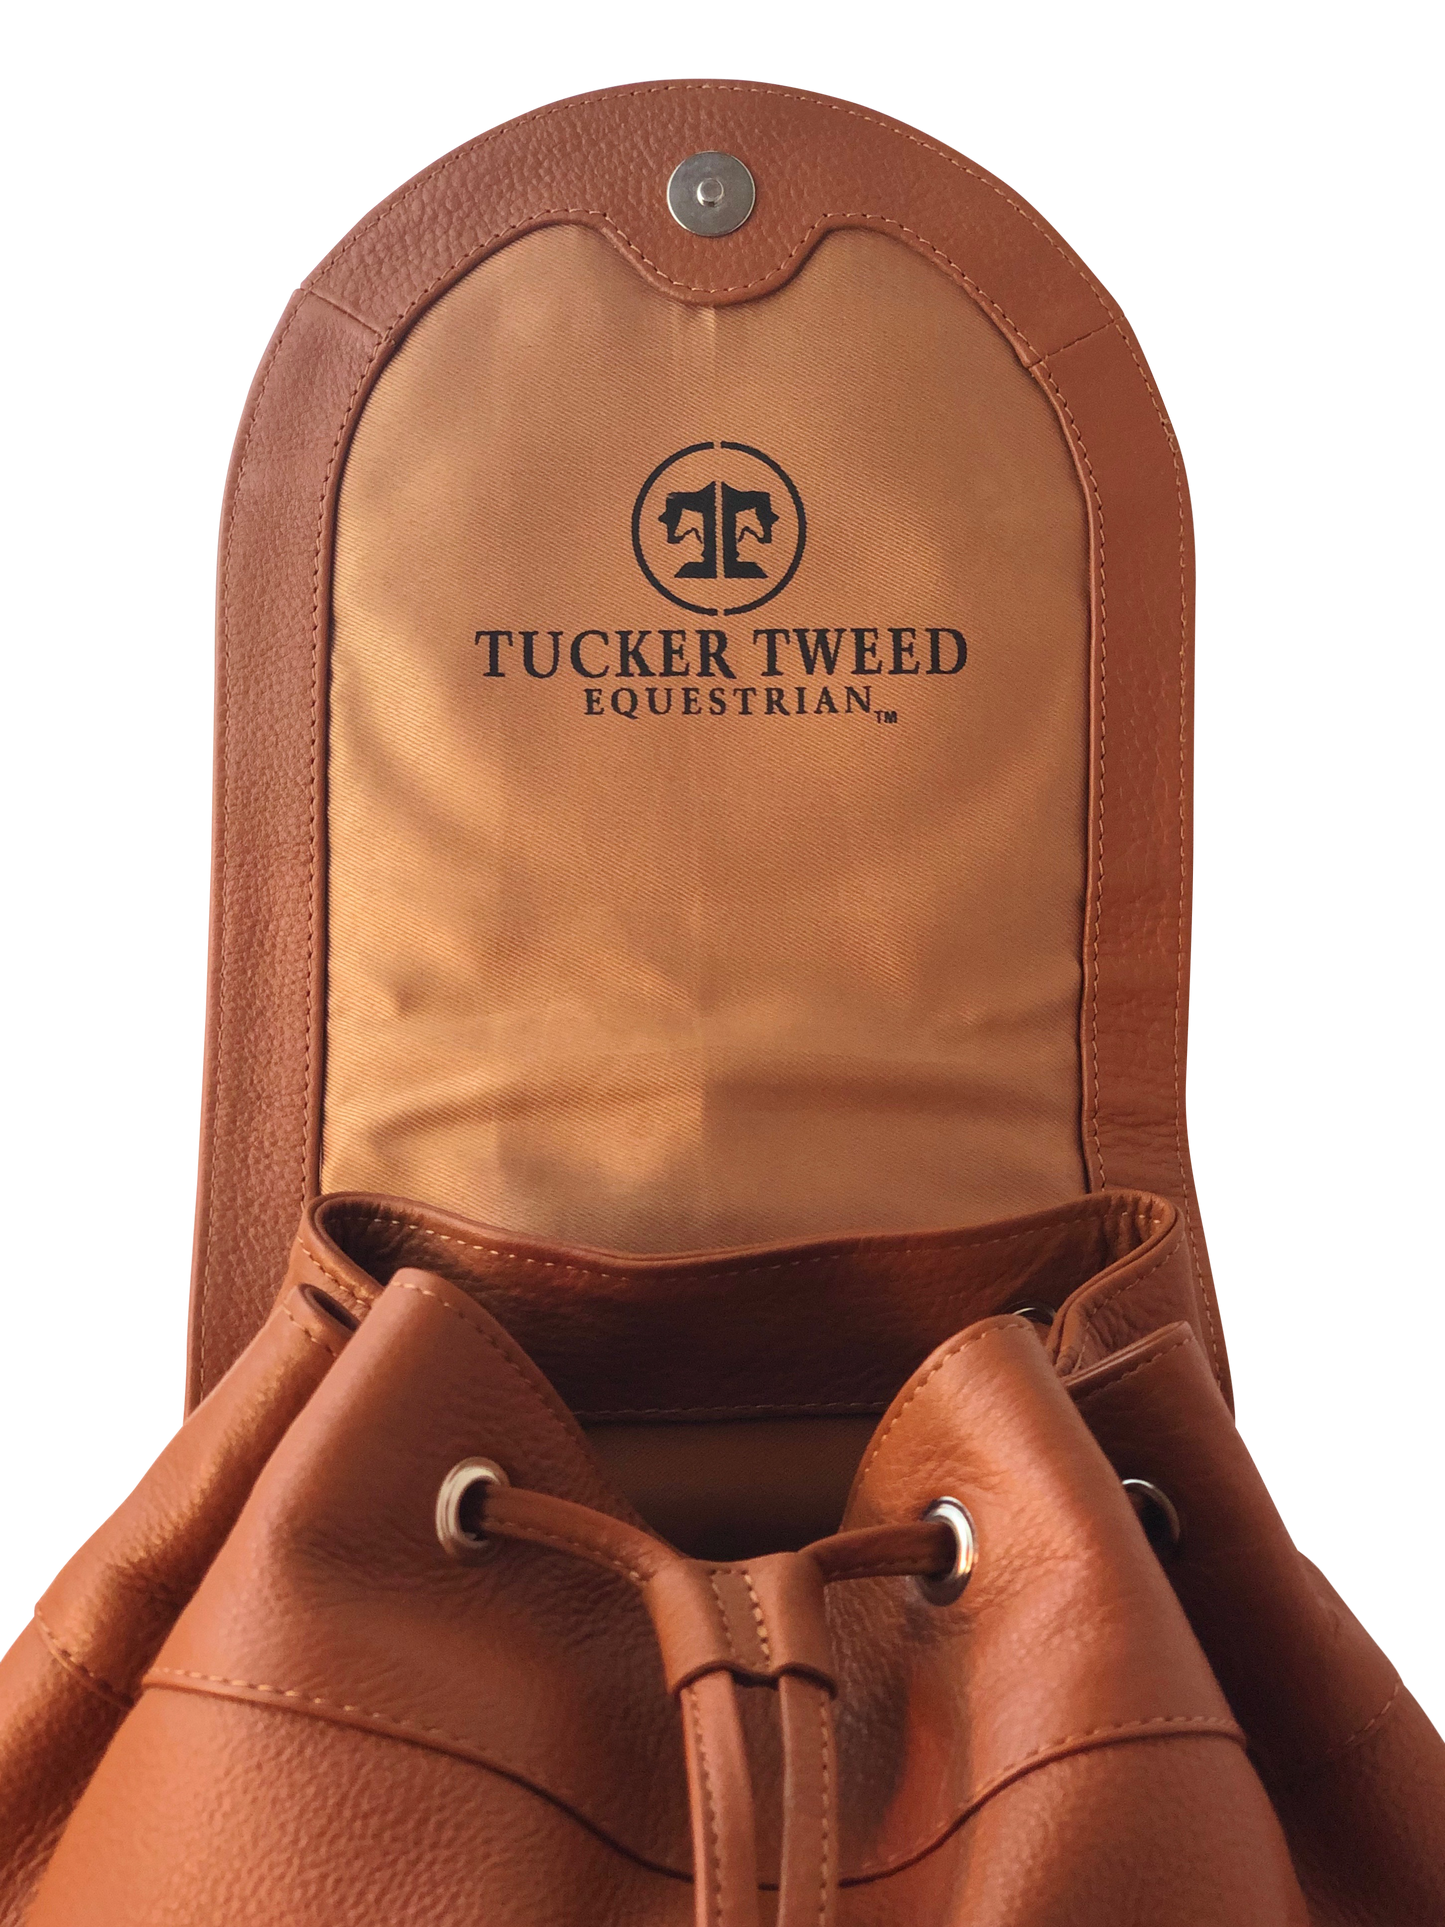 Tucker Tweed Equestrian Leather Handbags Brandywine Backpack: Dressage